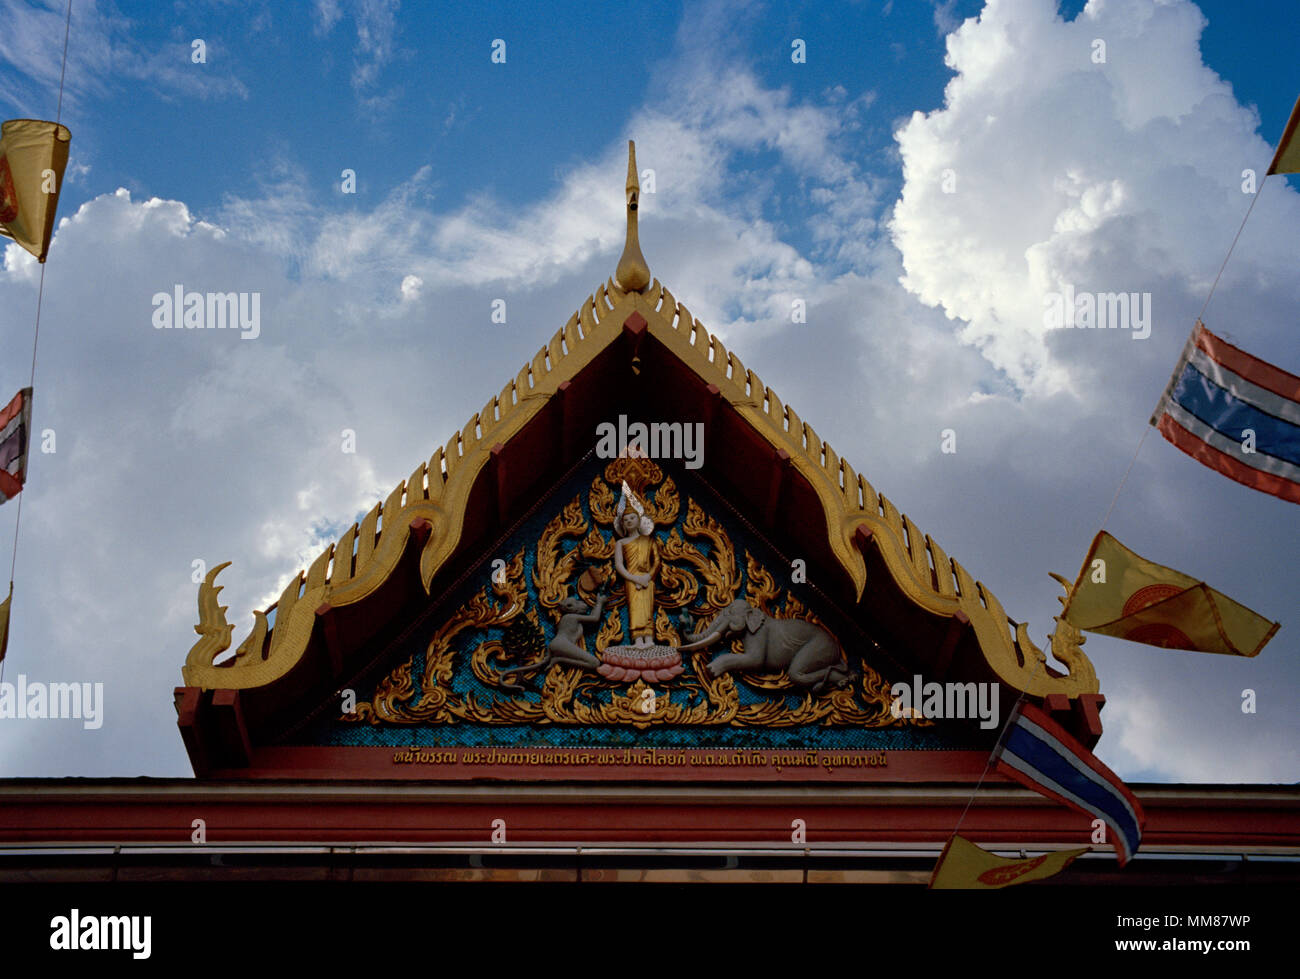 Dämmerung am Aufbau buddhistischer Tempel Wat Chamnihattakan Sam Ngam in Bangkok, Thailand in Südostasien im Fernen Osten. Architektur Reisen Stockfoto